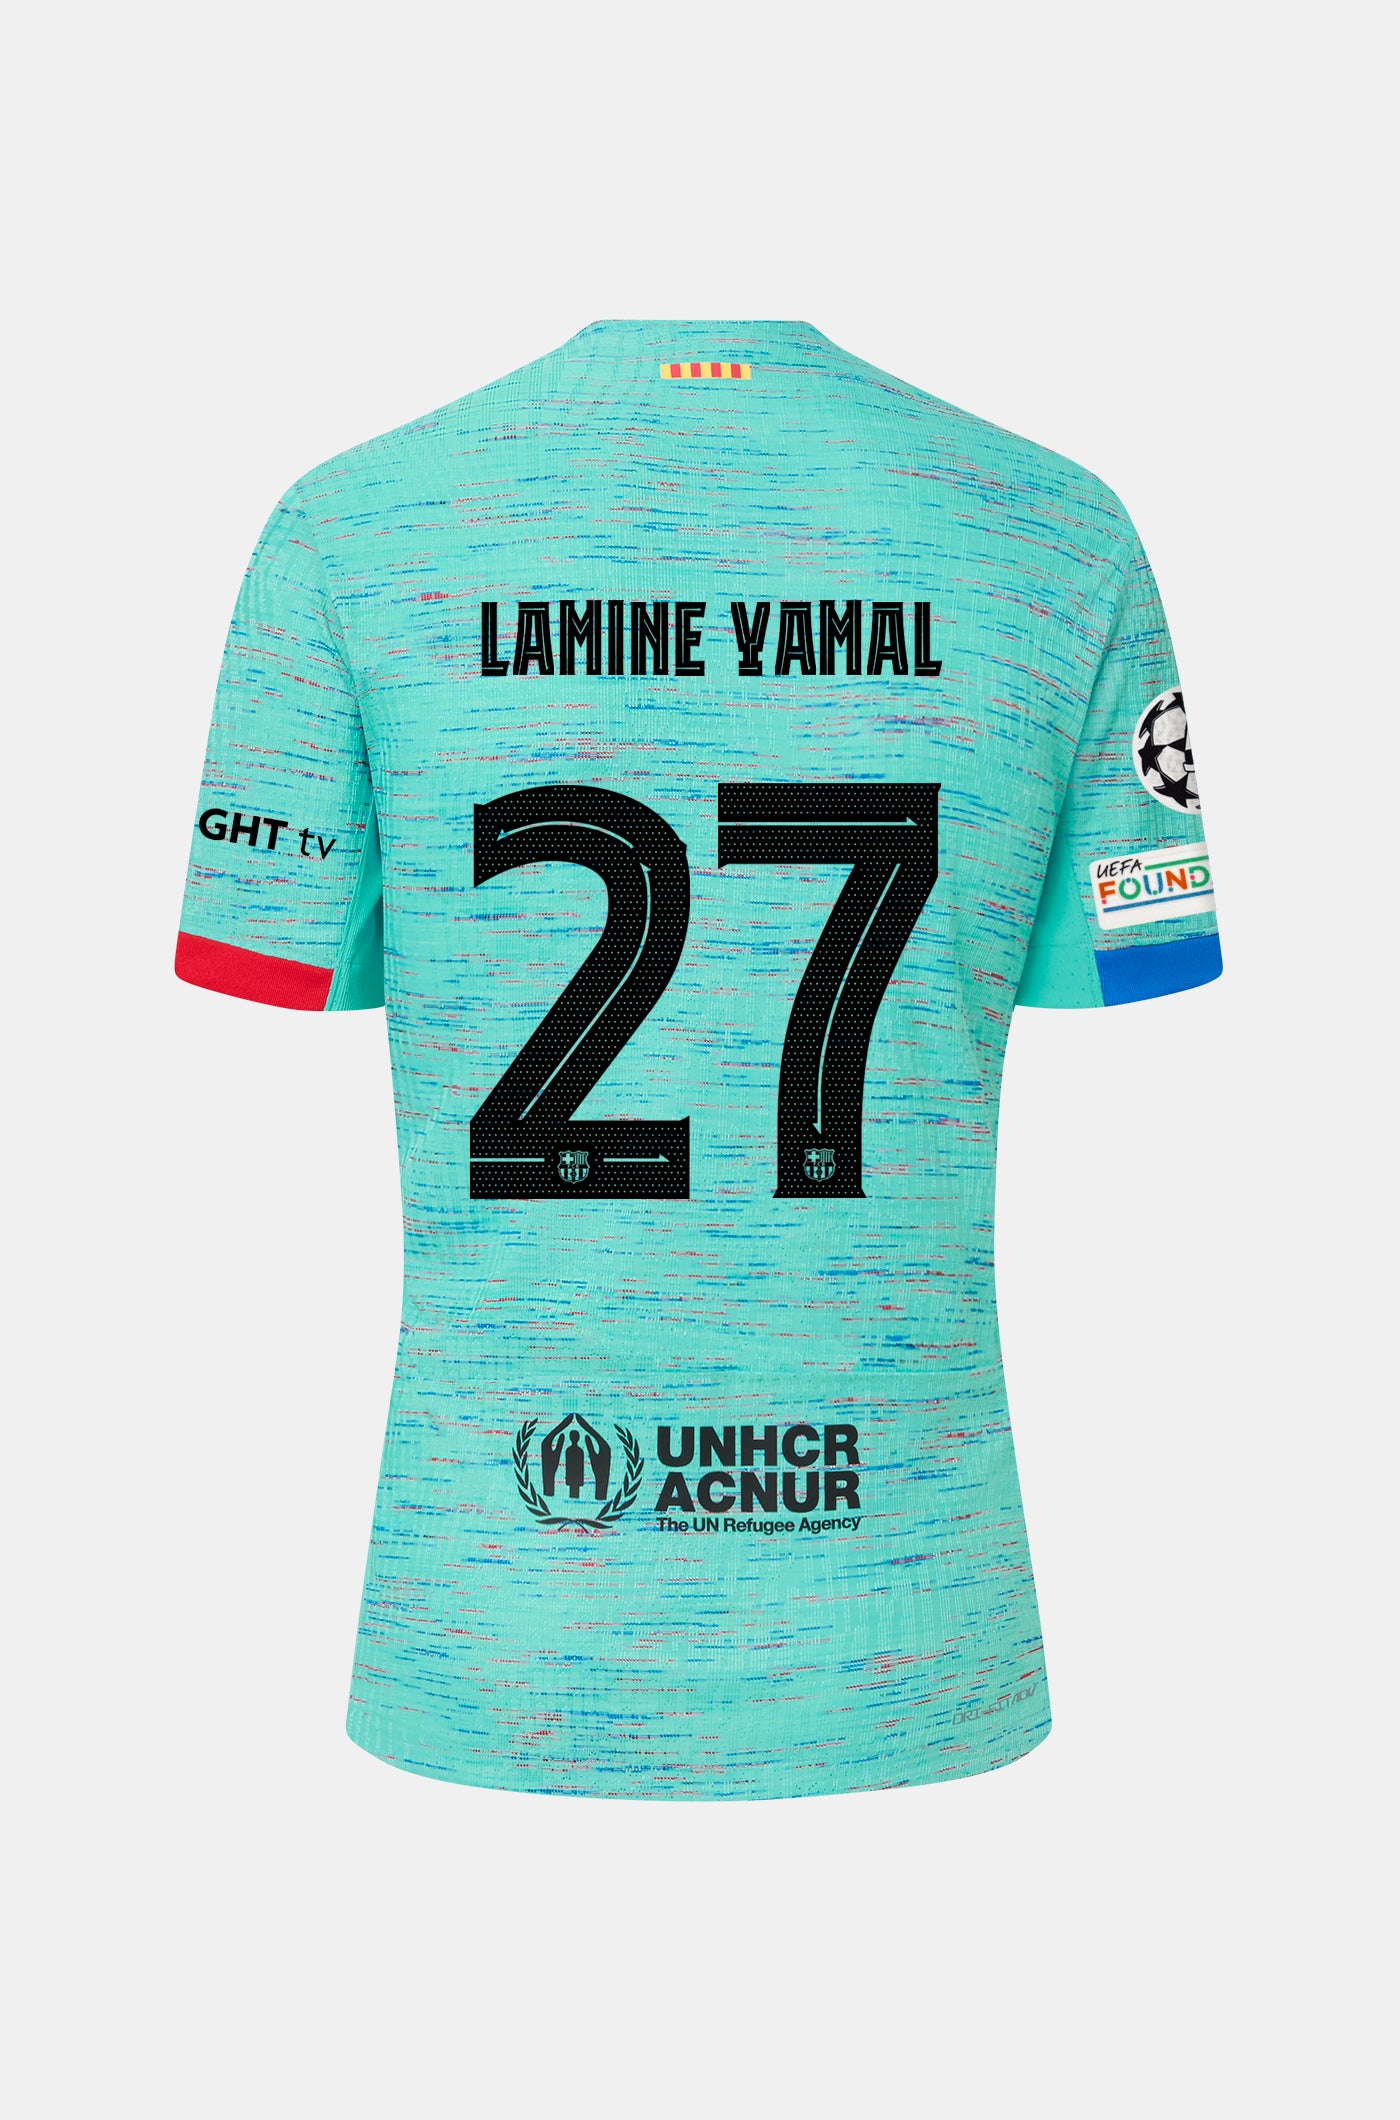 27. Lamine Yamal – Barça Official Store Spotify Camp Nou